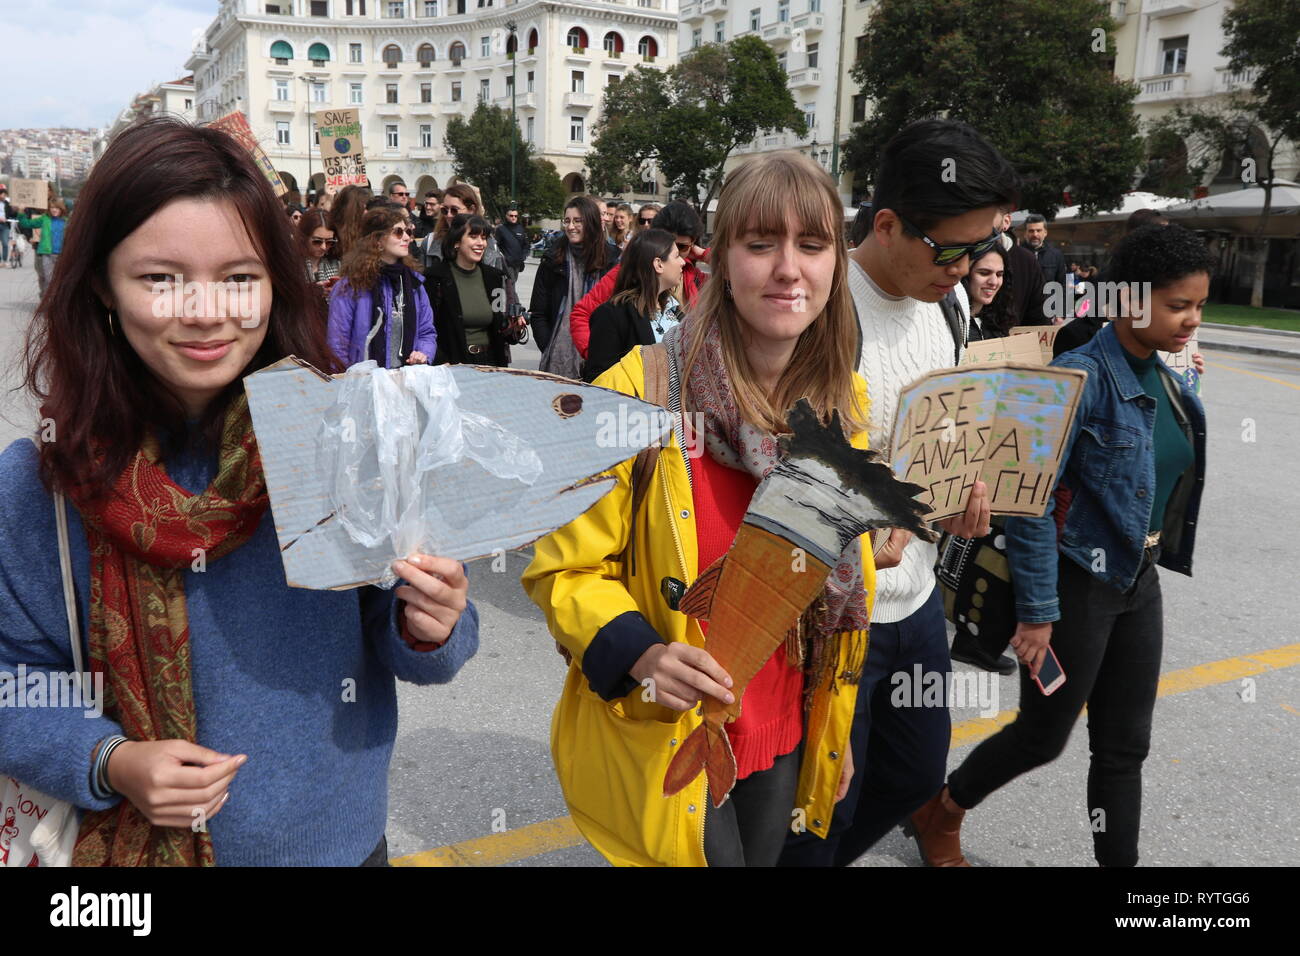 Salónica, Grecia. 15 Mar, 2019. Los estudiantes que participan en el cambio climático de las protestas en el norte de la ciudad portuaria griega de Tesalónica. Crédito: Orhan Tsolak/Alamy Live News Foto de stock